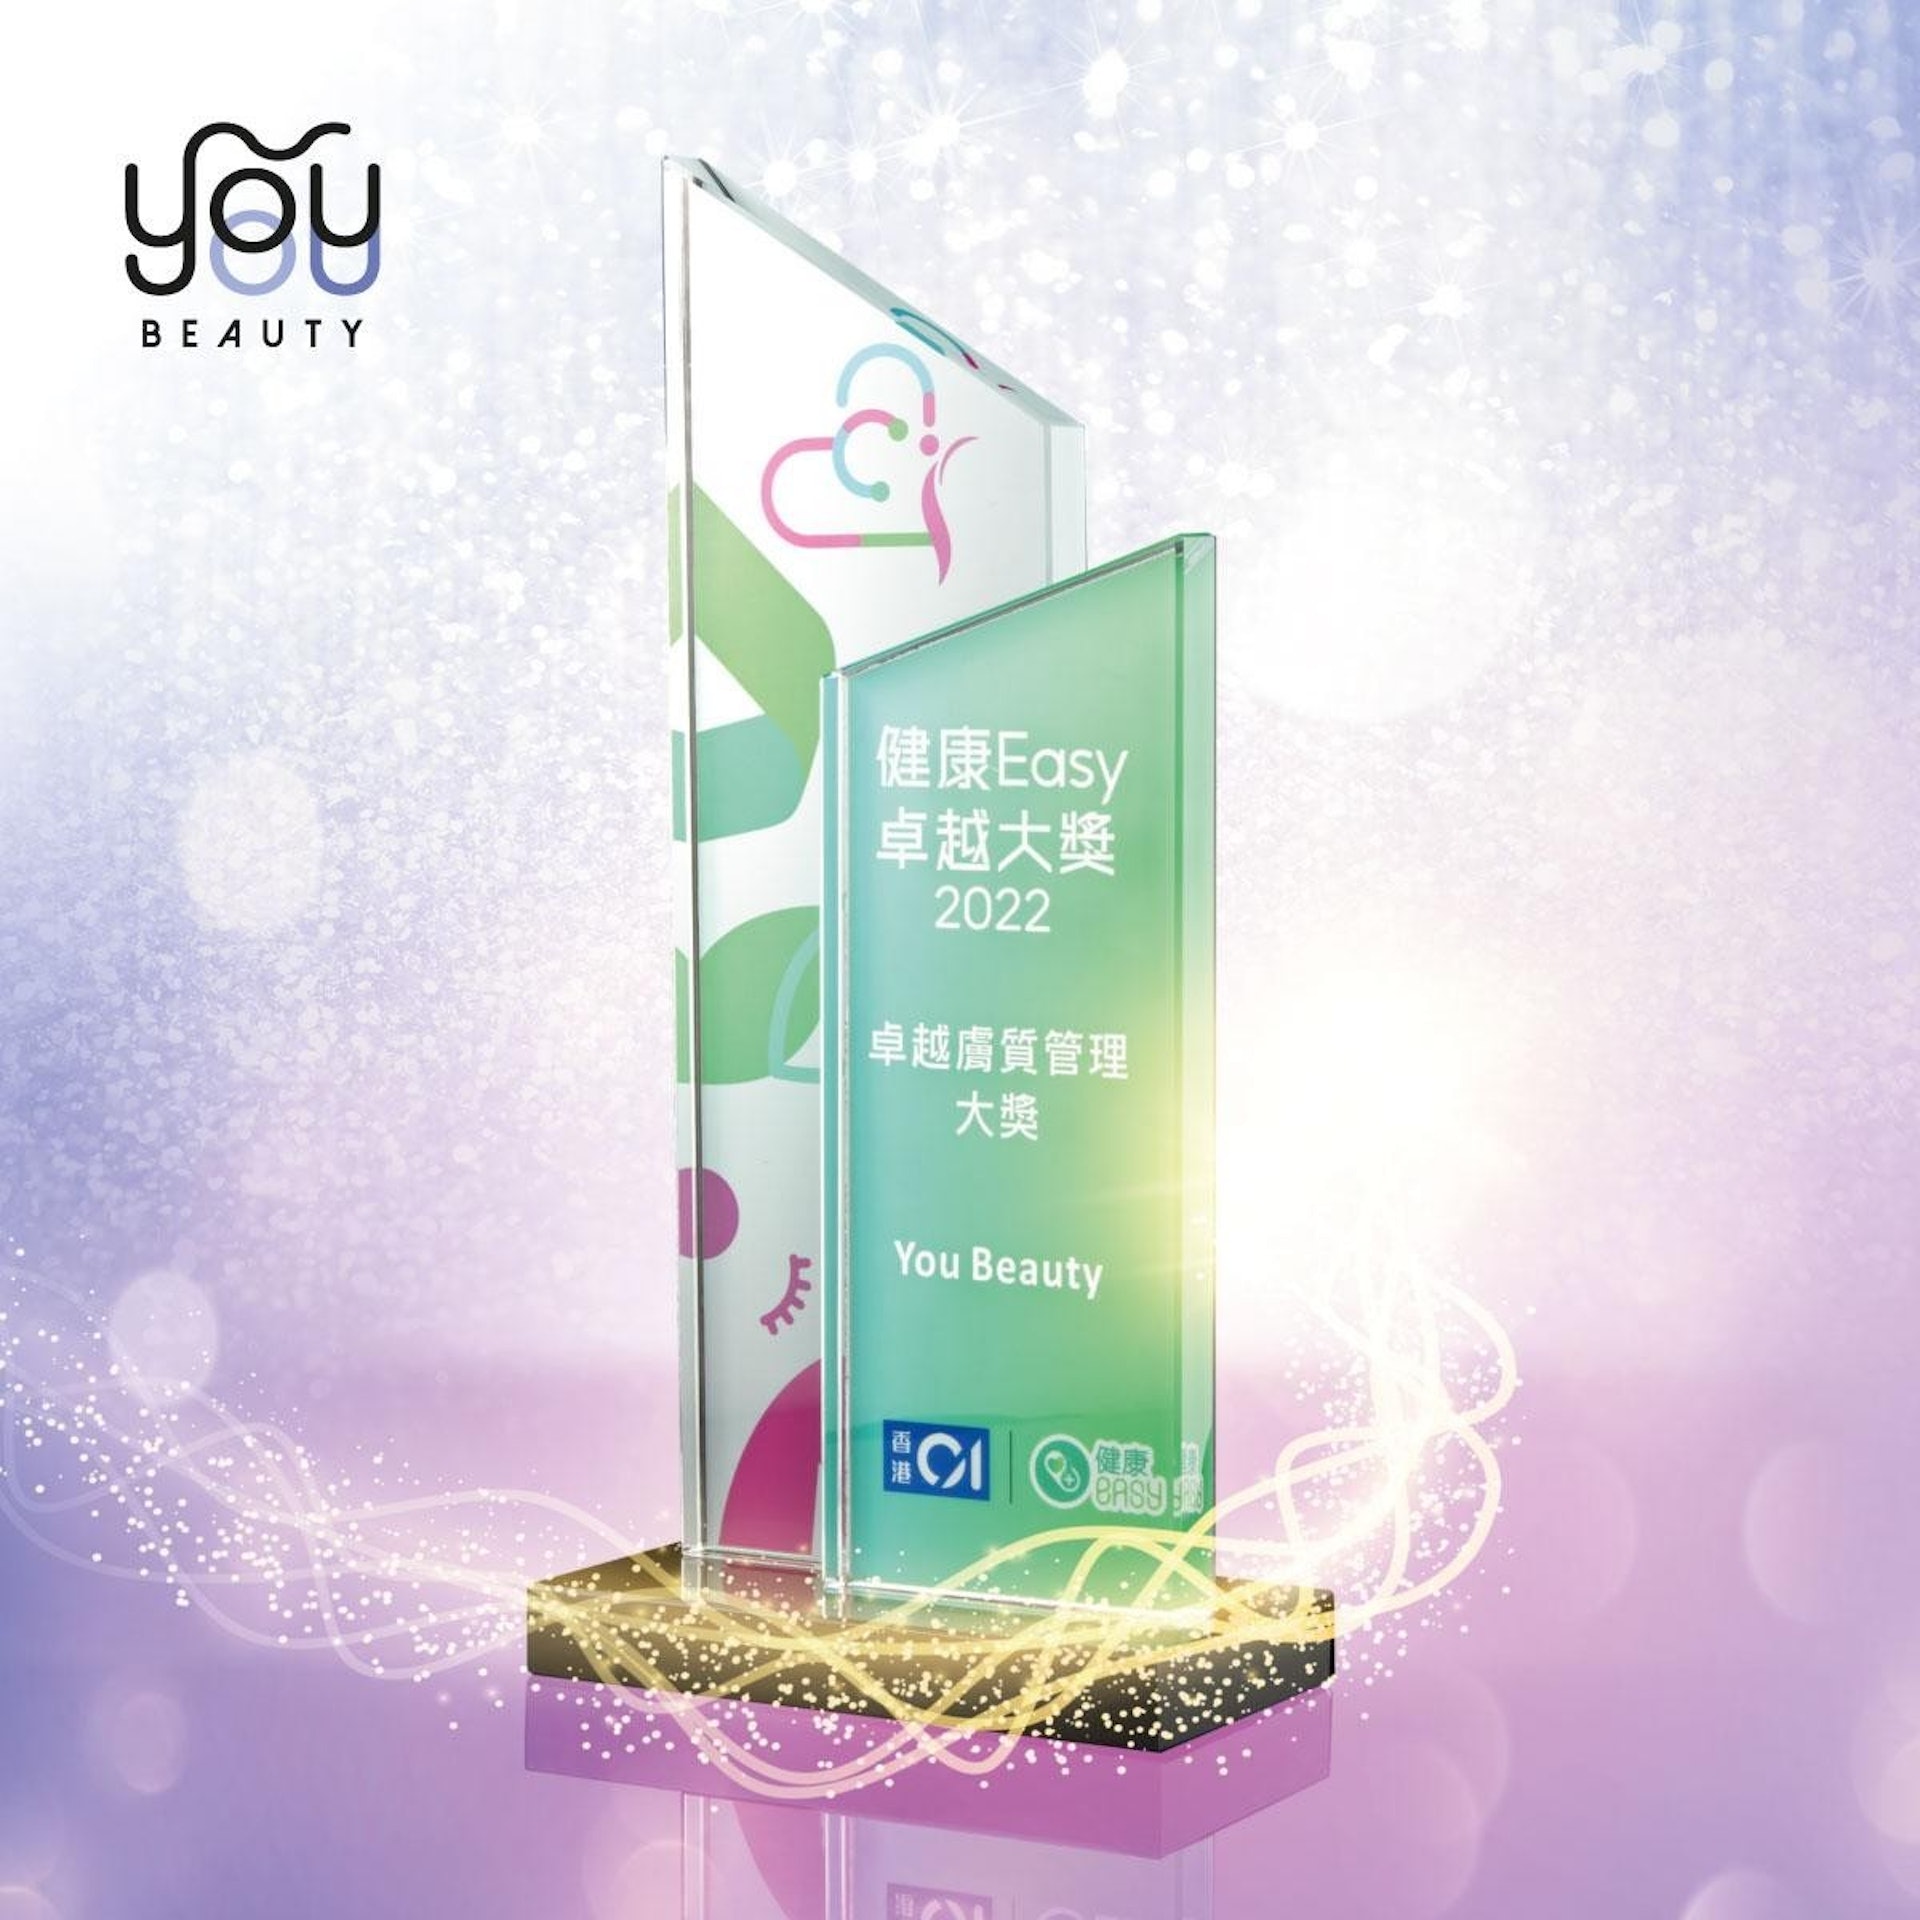 「香港01」特意向 You Beauty 頒發「卓越膚質管理大獎」，以讚揚其優質的服務及表現，更奠定其「光學膚質管理專家」的市場地位。（圖片：You Beauty）